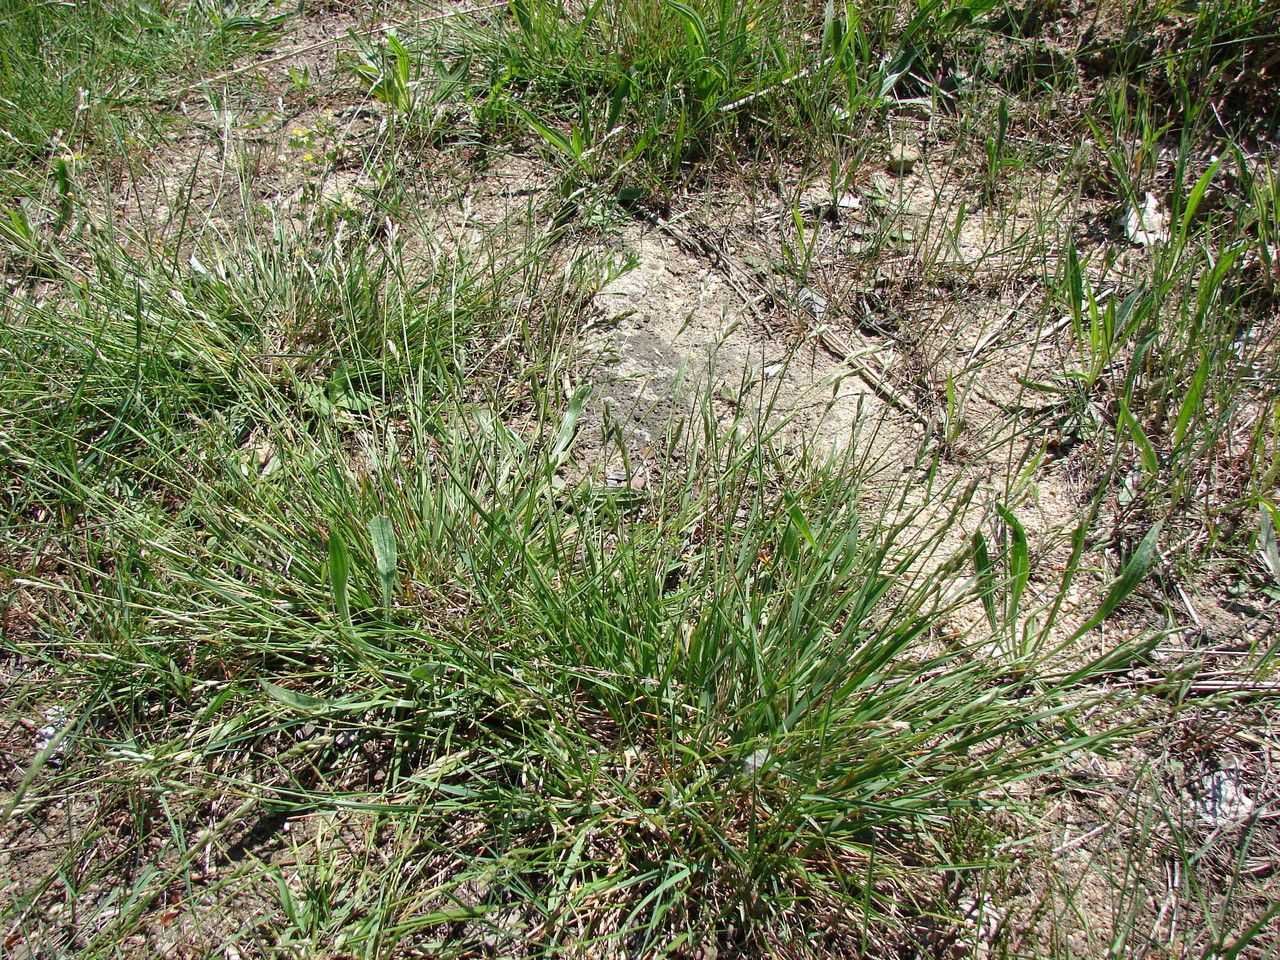 Heath grass